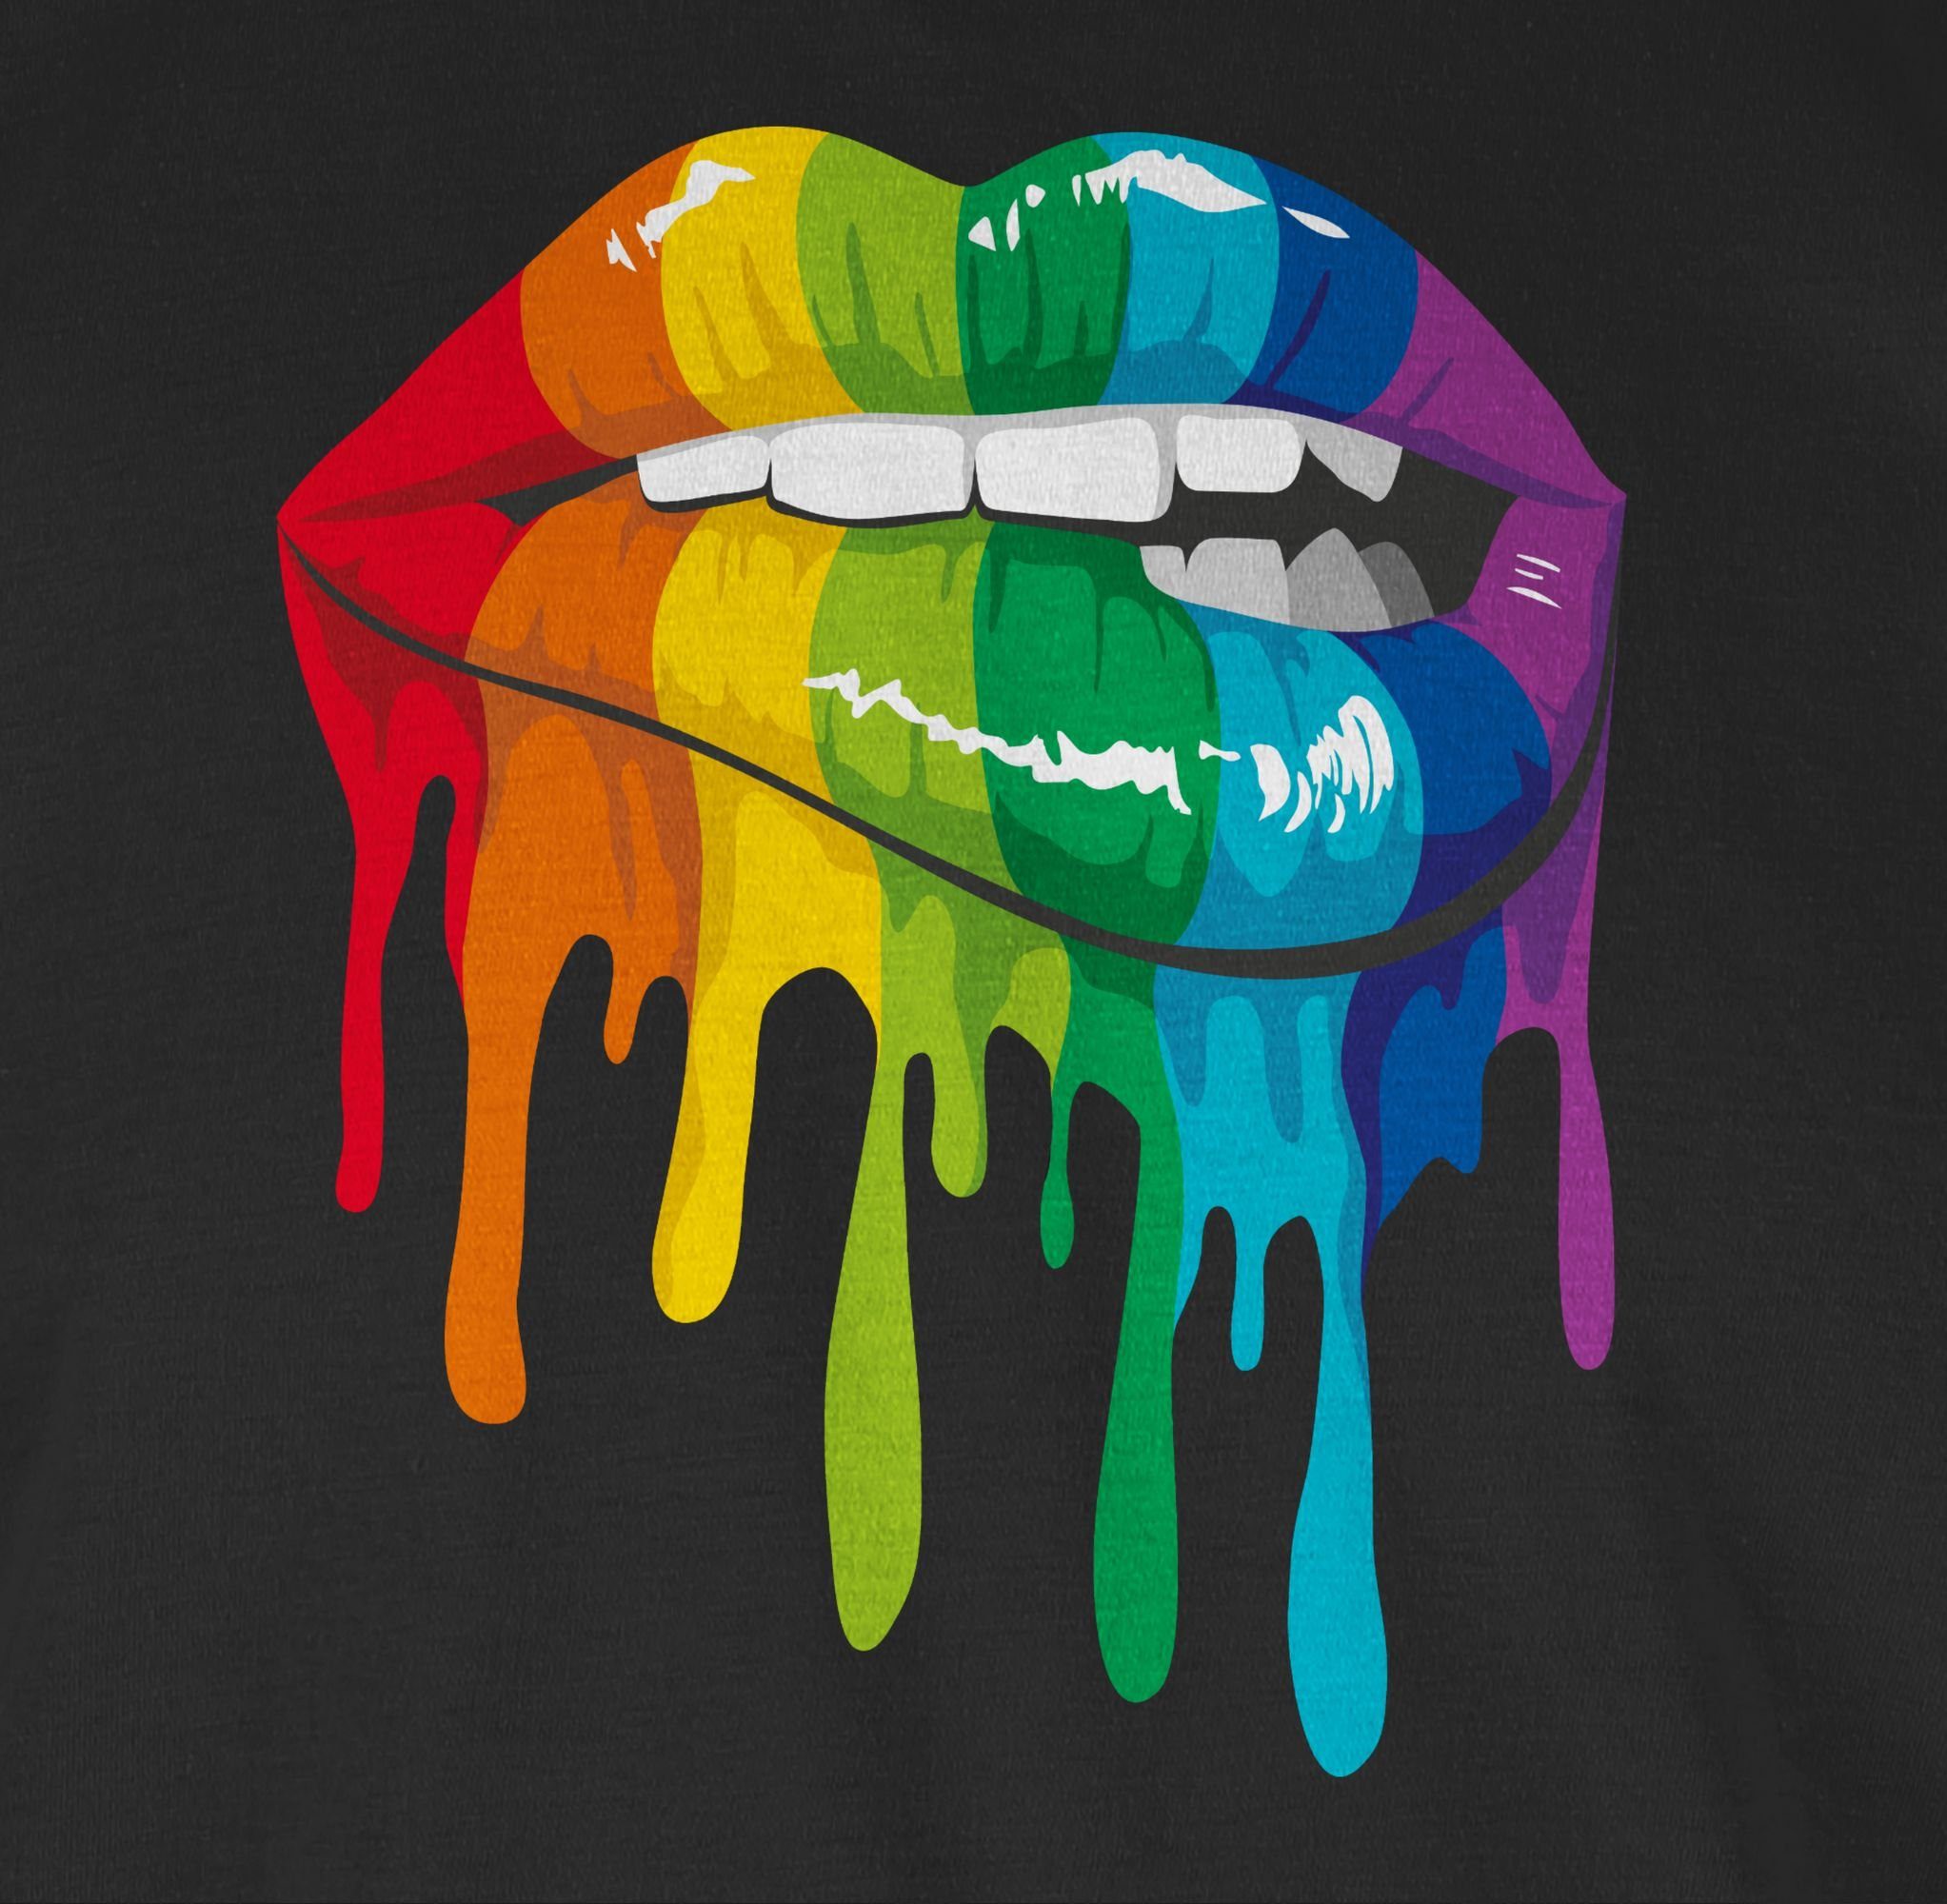 1 LGBT Shirtracer LGBT & Lippen T-Shirt LGBTQ Kleidung Schwarz